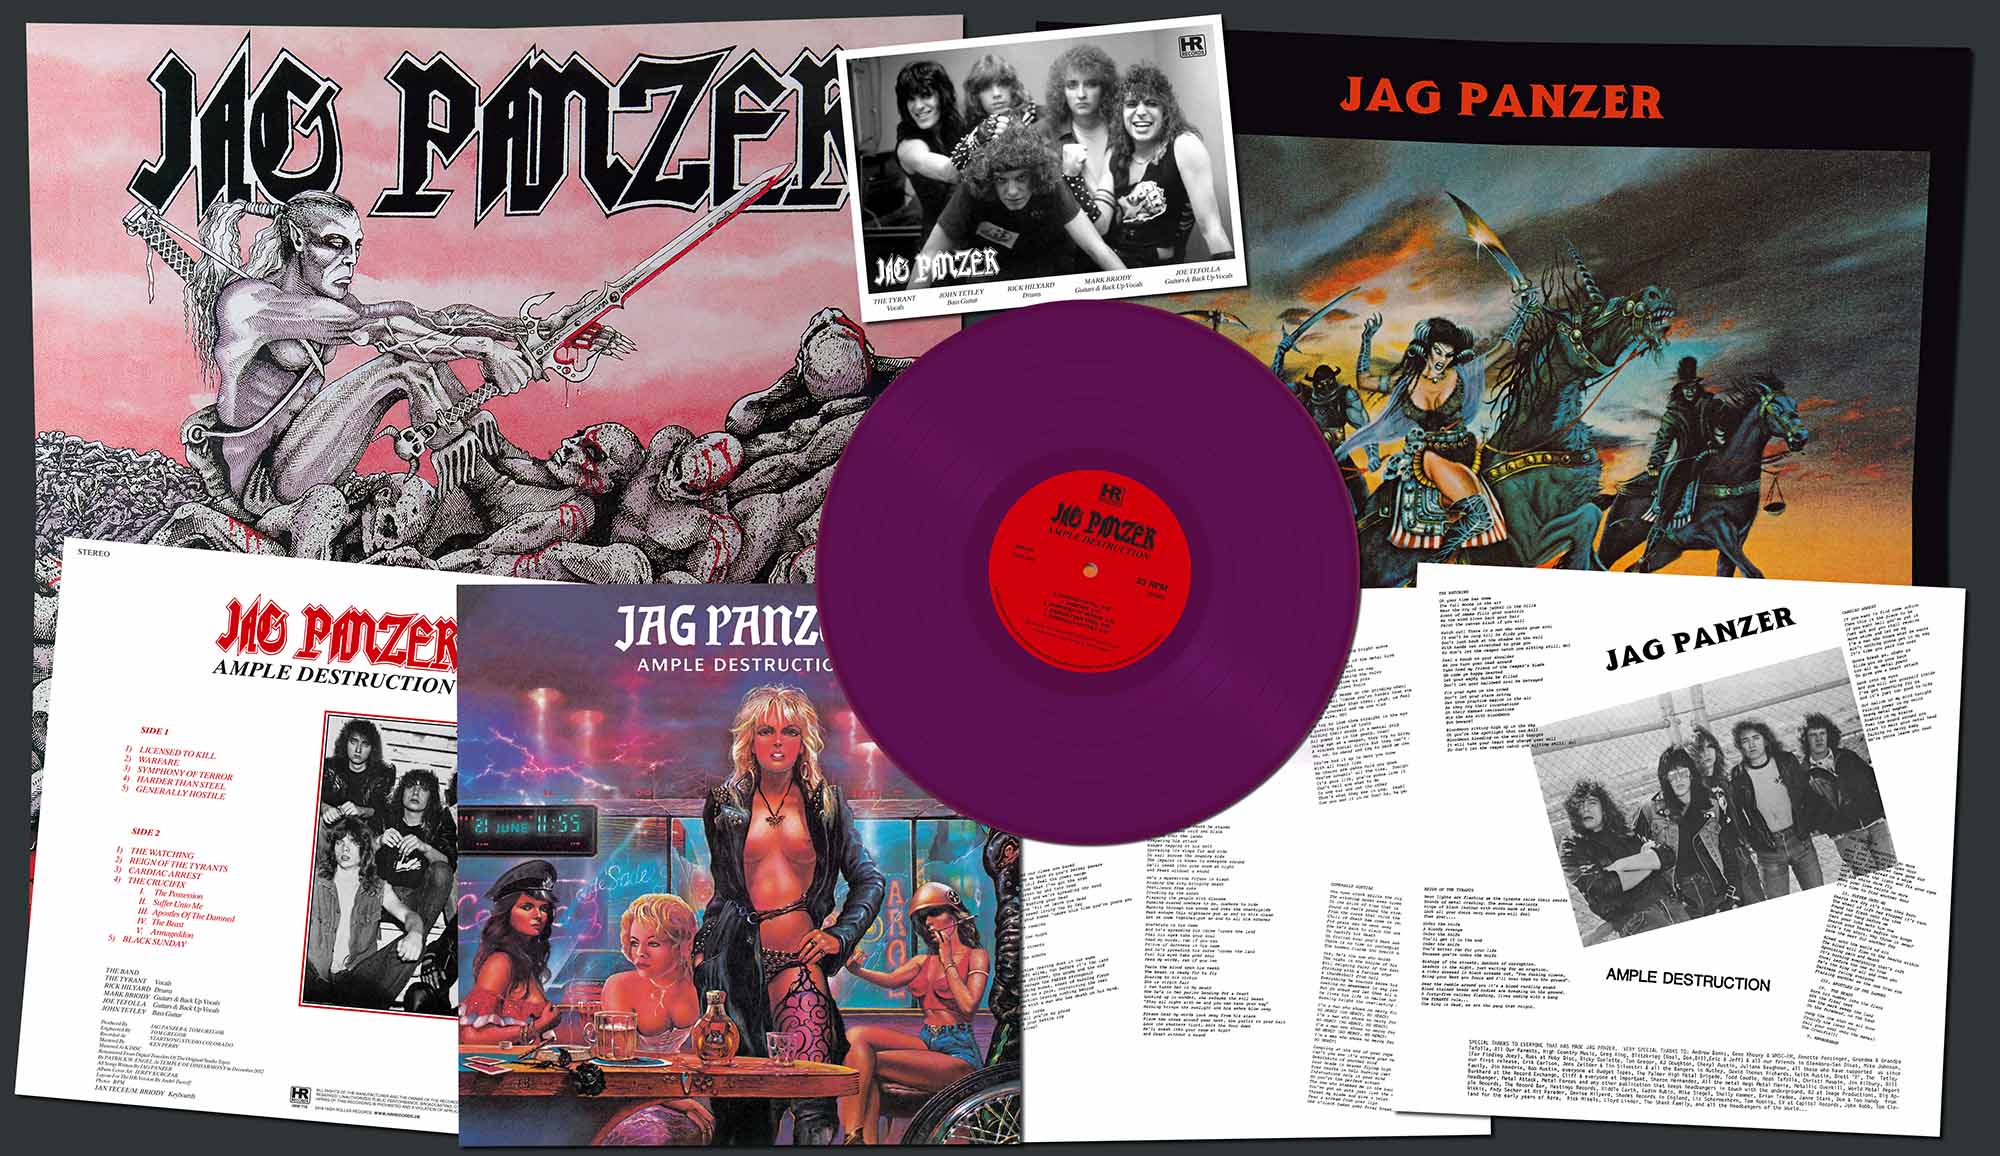 JAG PANZER - Ample Destruction  LP  COMIC COVER